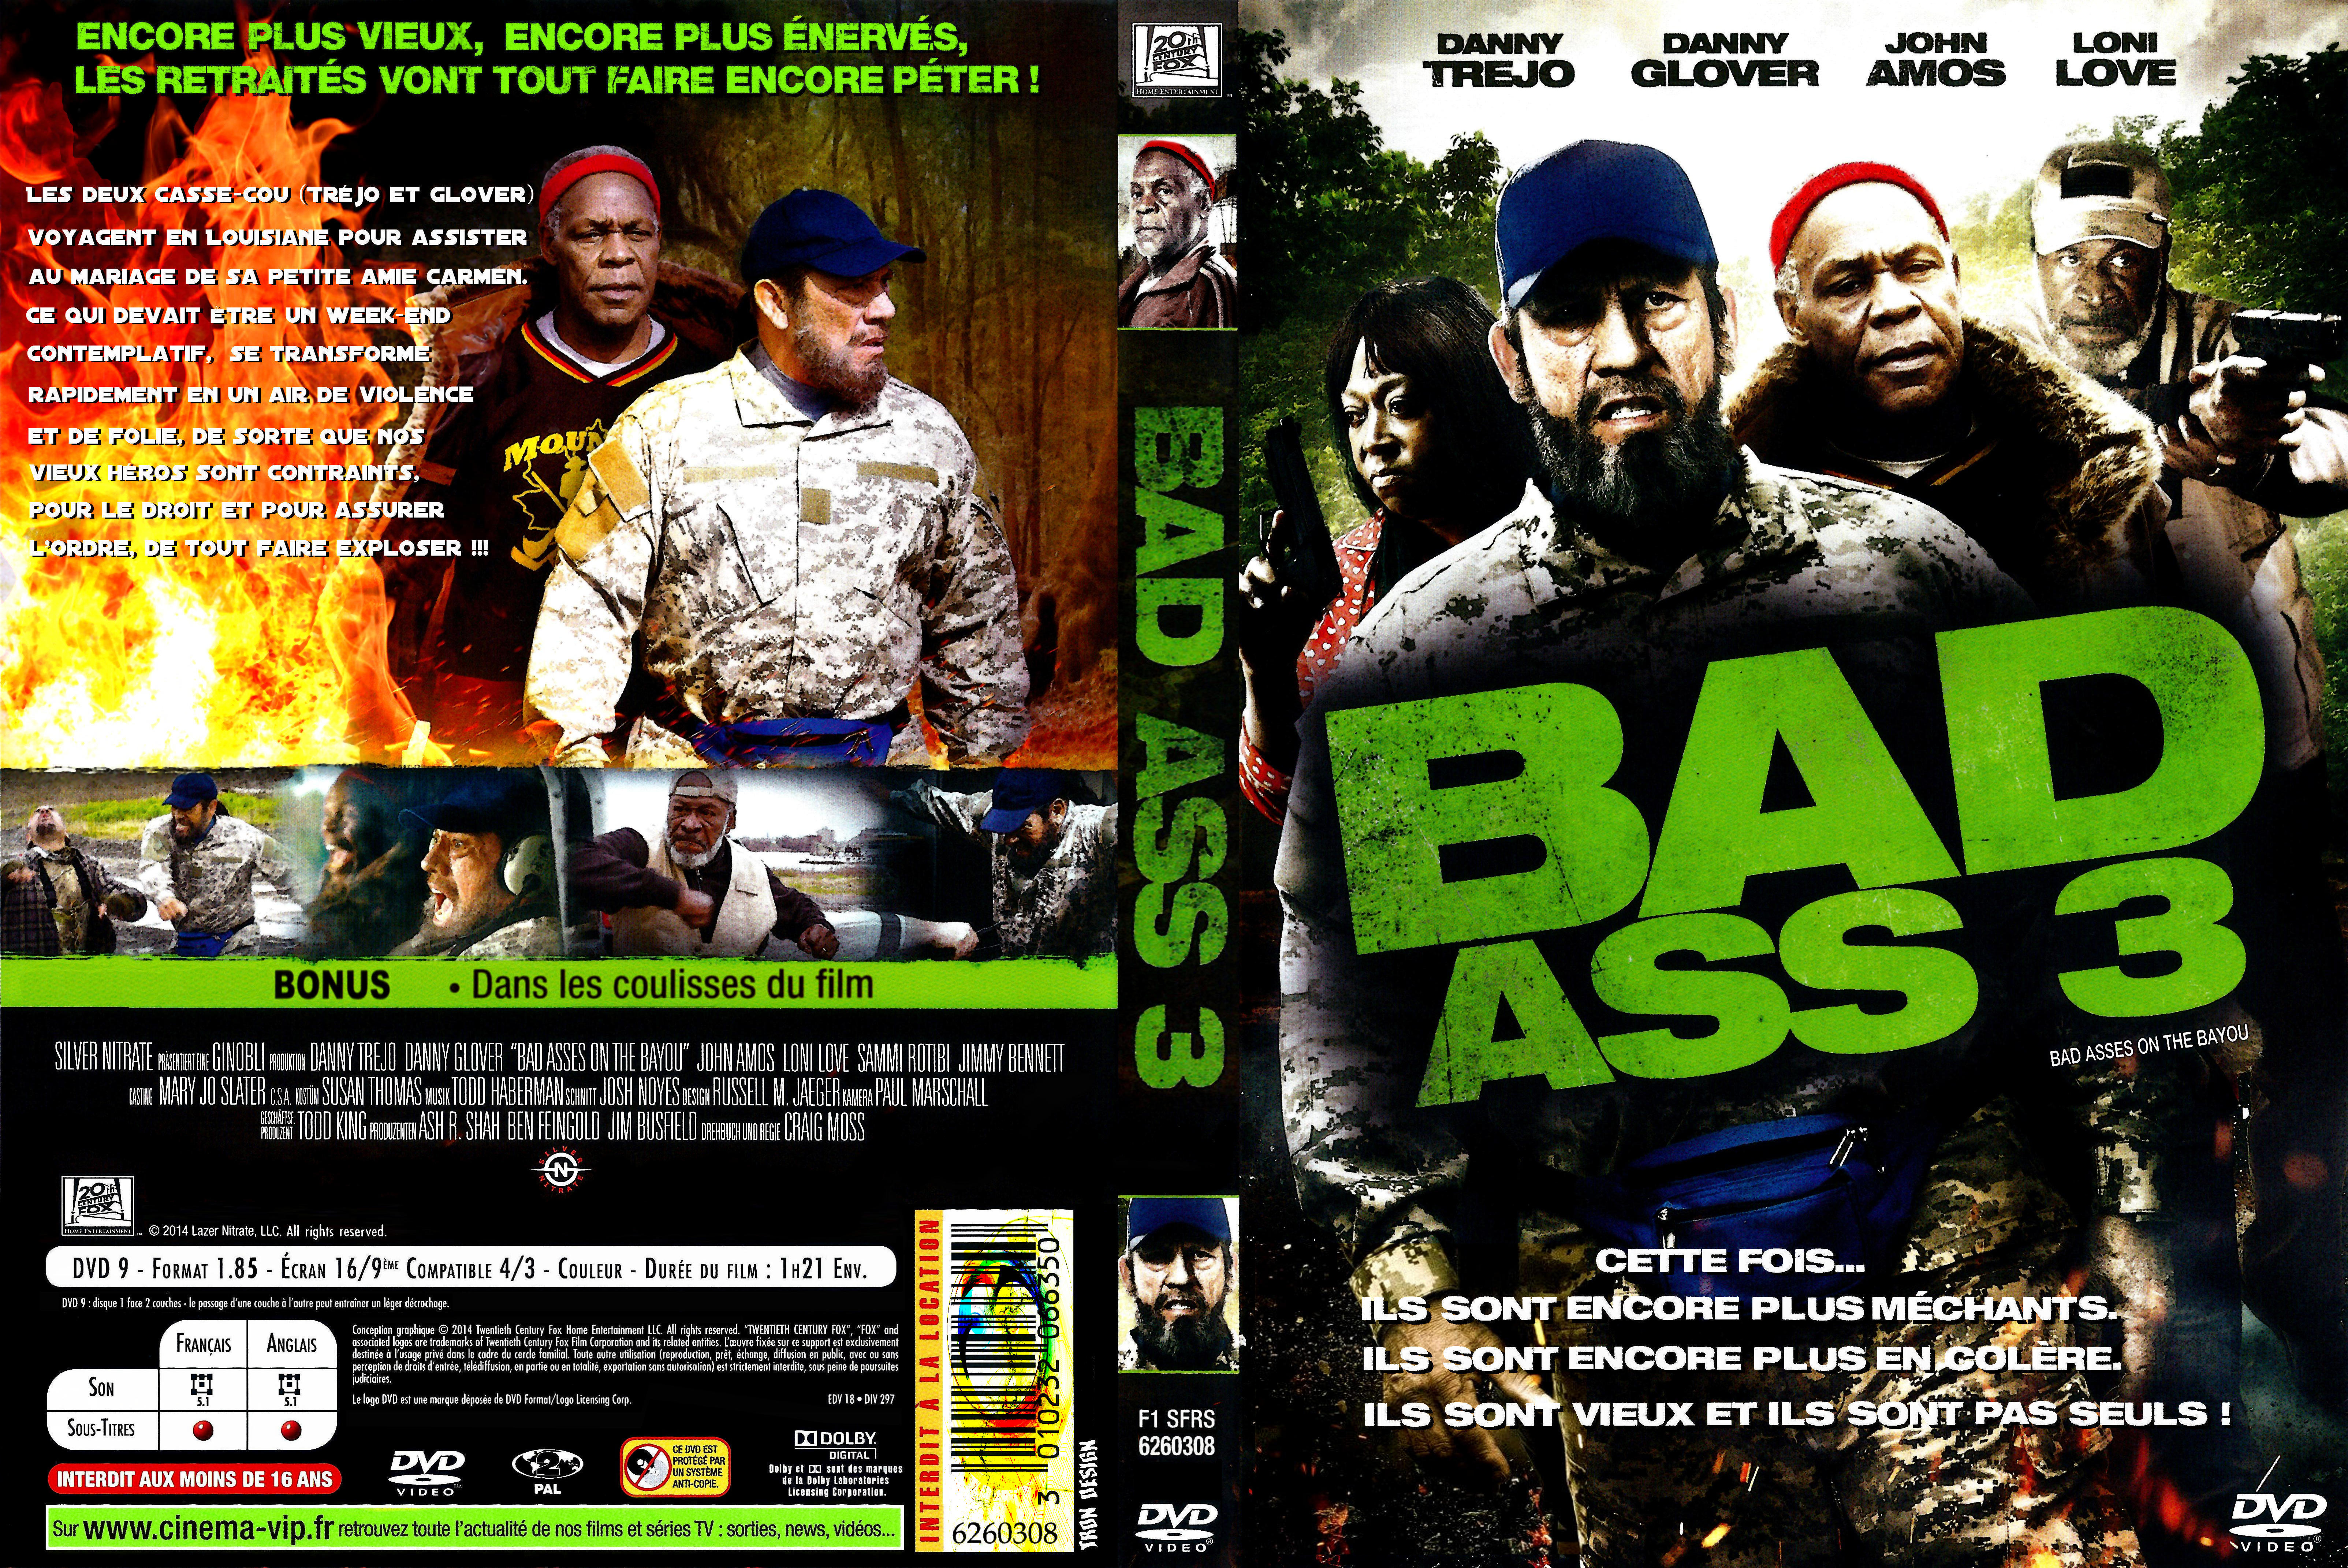 Jaquette DVD Bad ass 3 custom